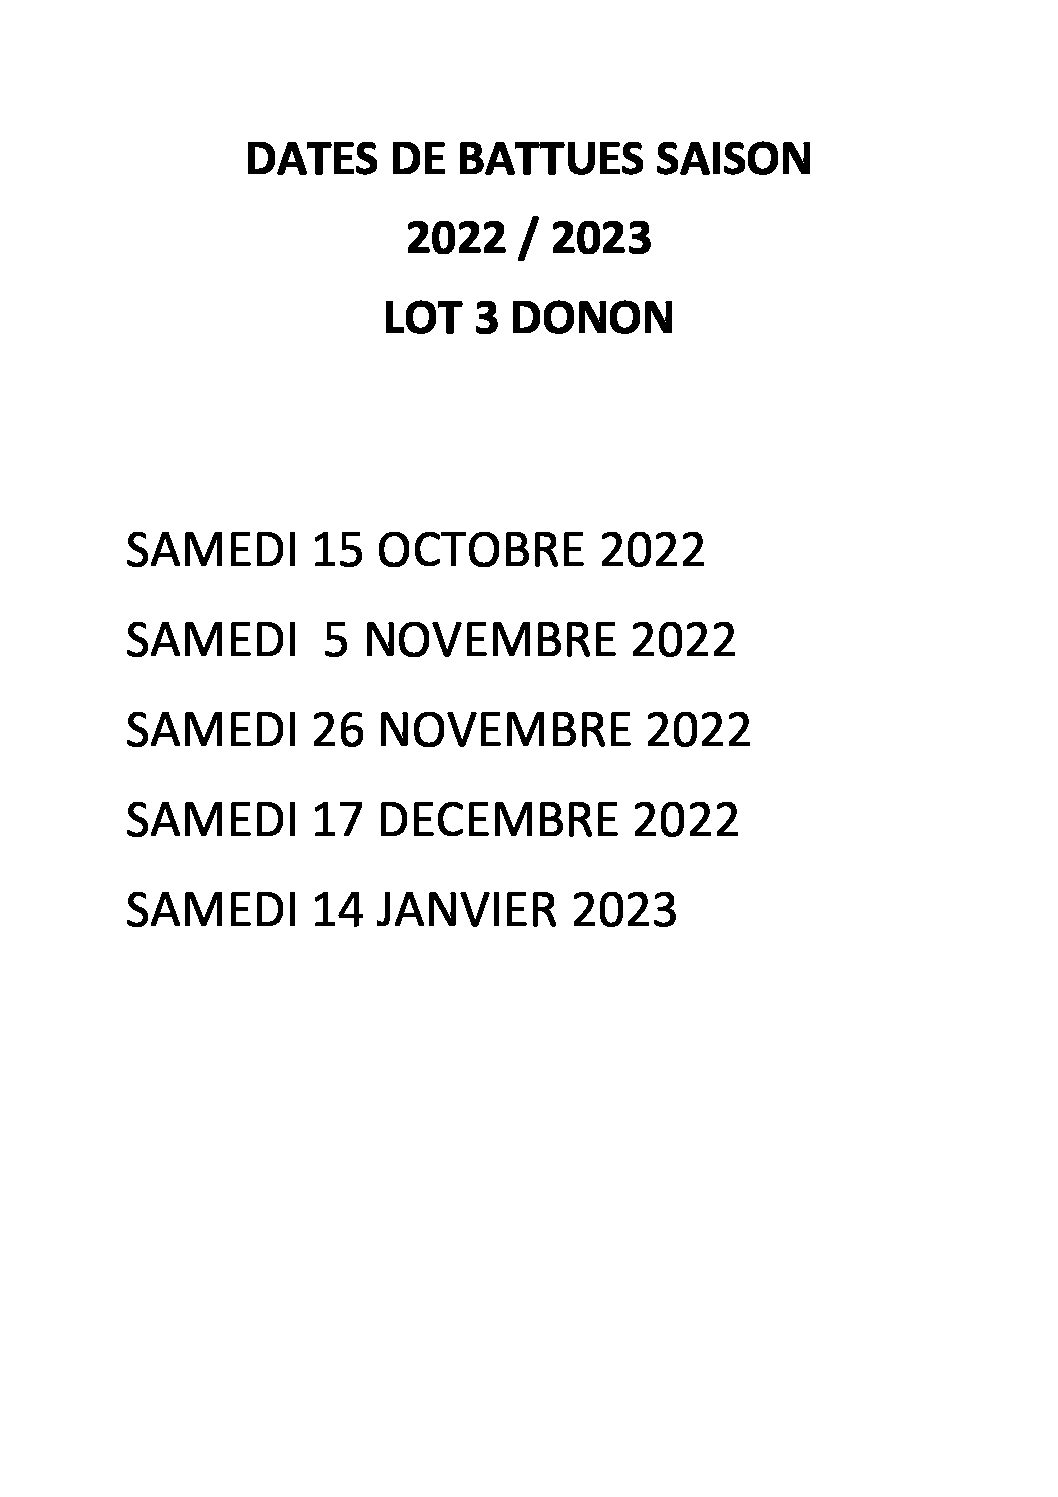 DATES DE BATTUES – SAISON 2022/2023 – LOT 3 DONON